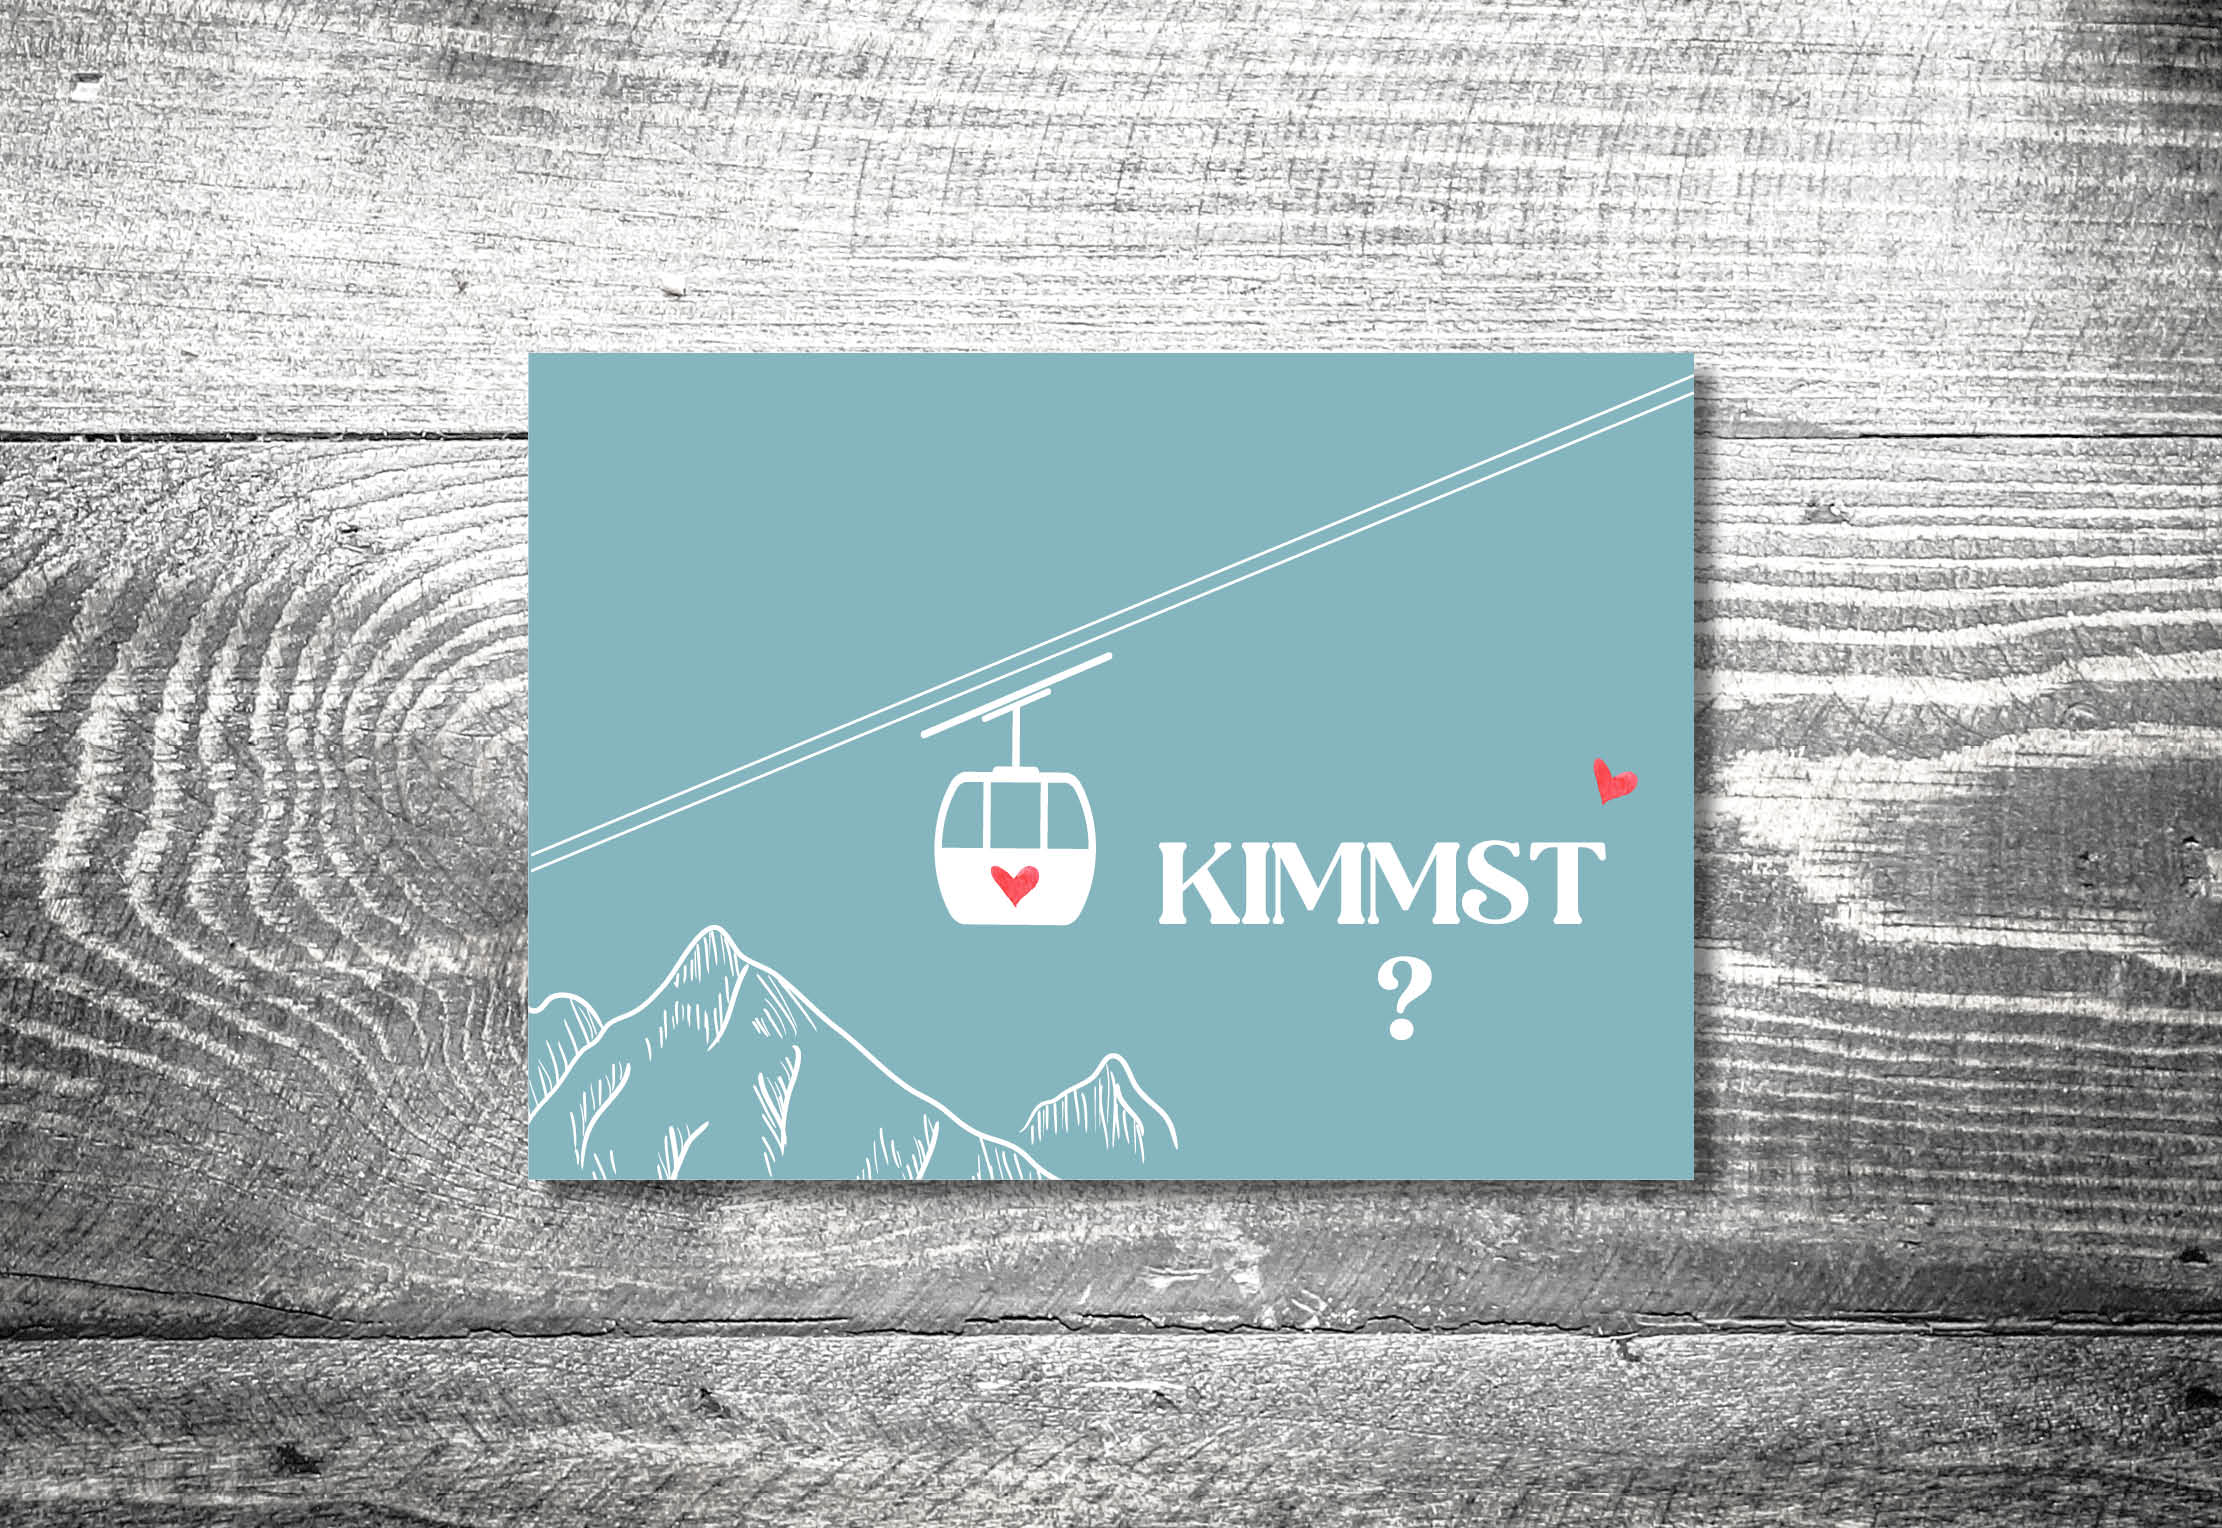 kartlerei bayrische einladungskarten geburtstag alpenstyle bergbahn gondel herzlgondel - Geburtstagseinladung auf Bayrisch